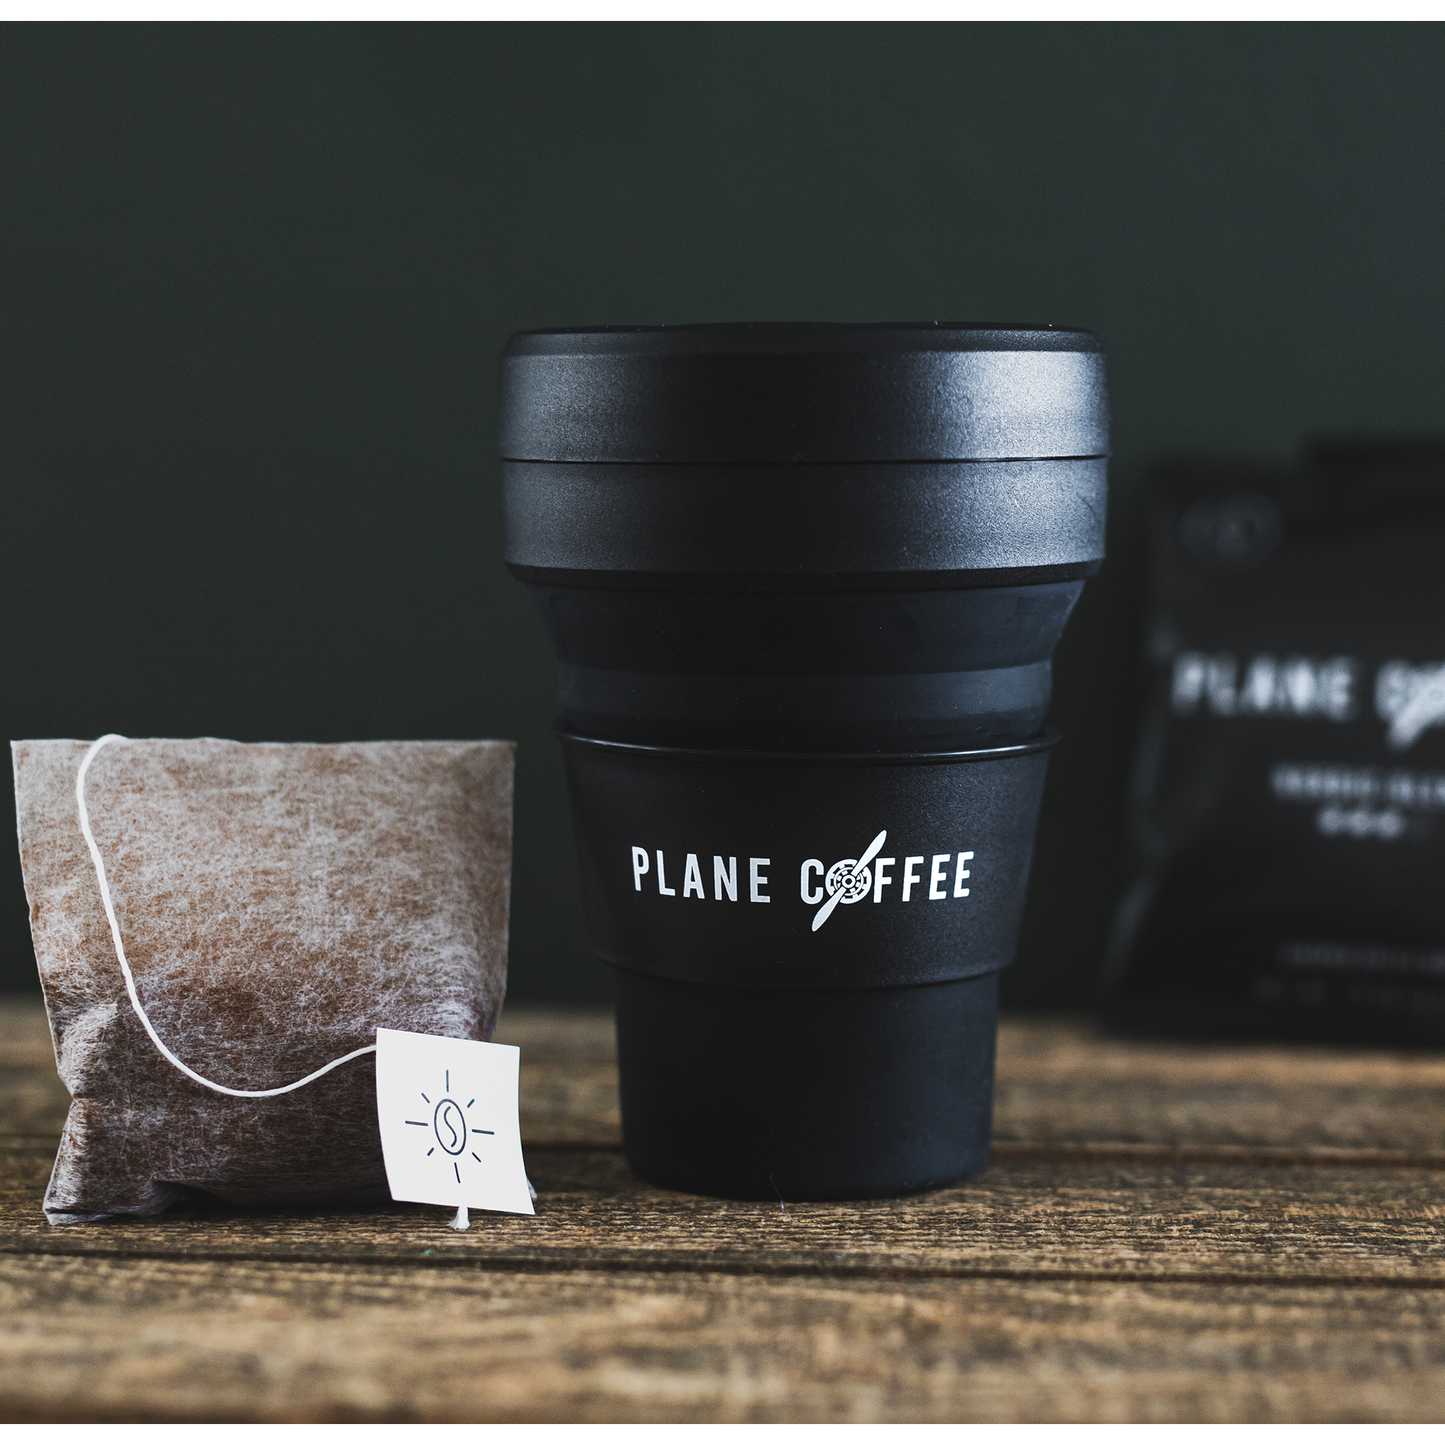 Plane Coffee Stojo kopp er en perfekt reisekopp. Ideell for kaffe og te og er helt sammenleggbar. Genial for pendling, fjelltur eller reising. Tar lite plass og veier nesten ingenting. 